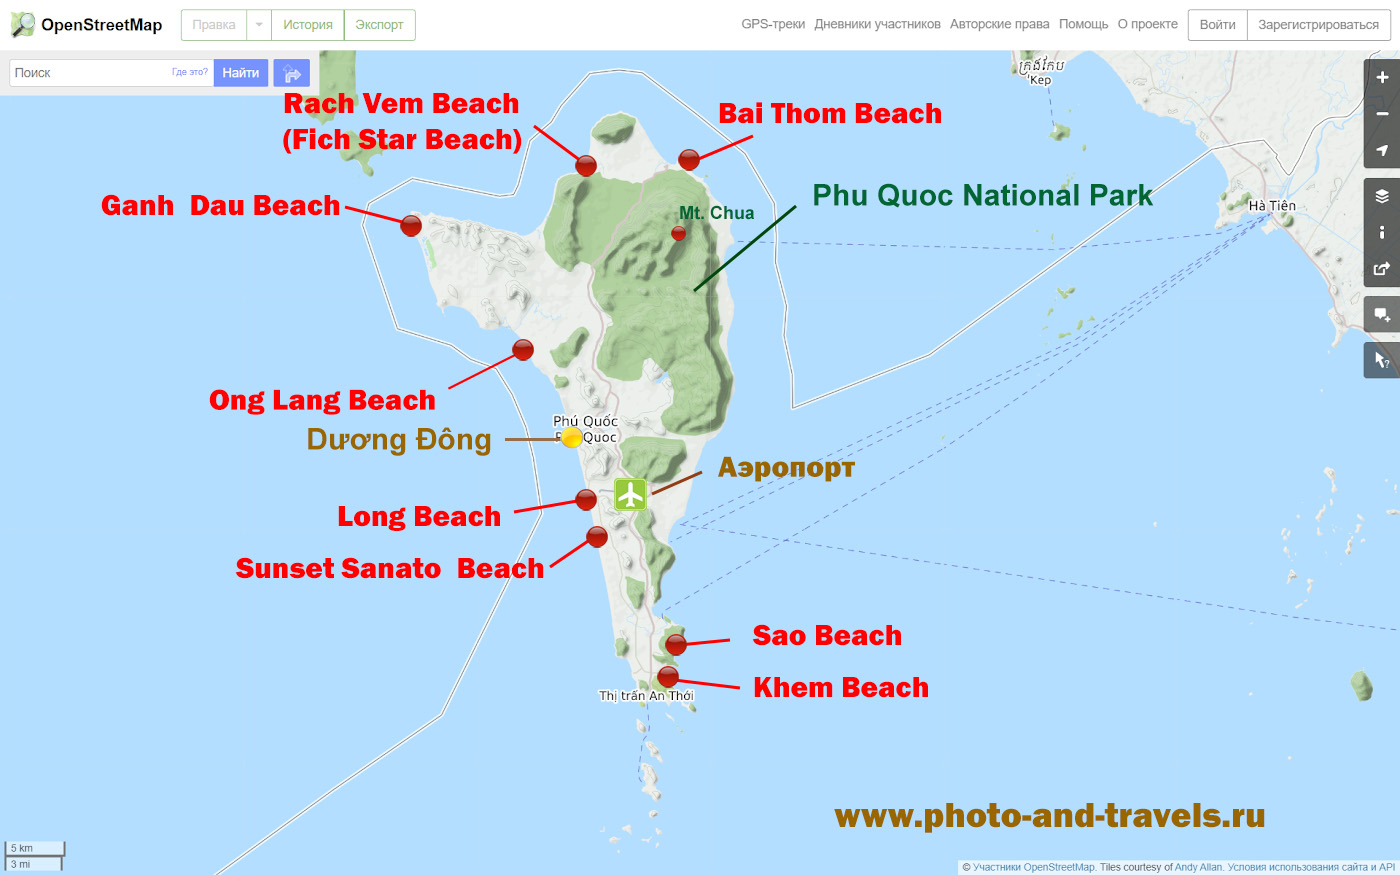 5. Карта расположения пляжей и достопримечательностей на острове Фукуок.